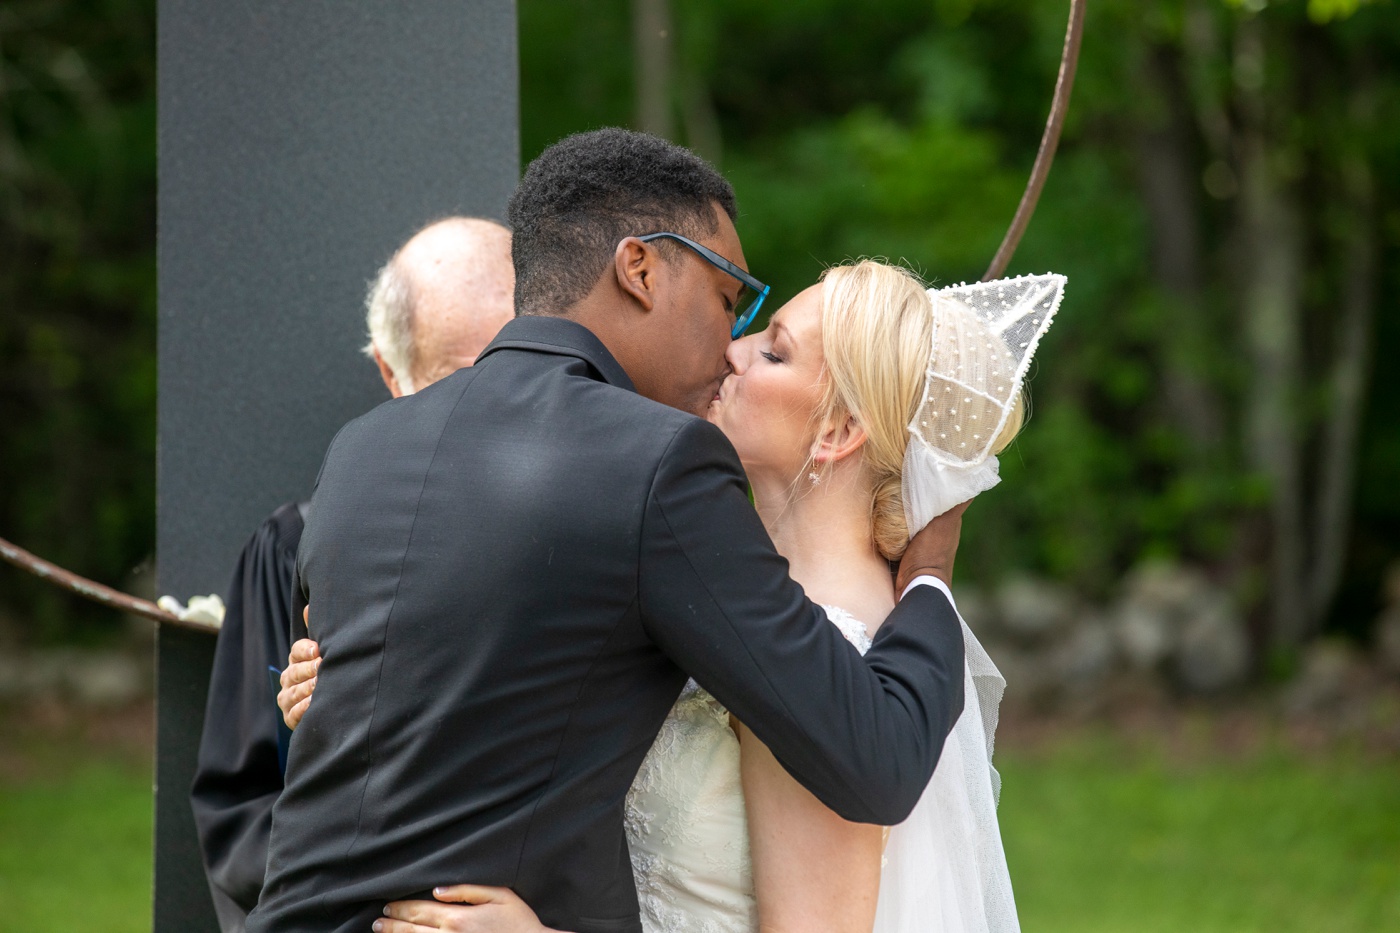 Backyard wedding ceremony in New England